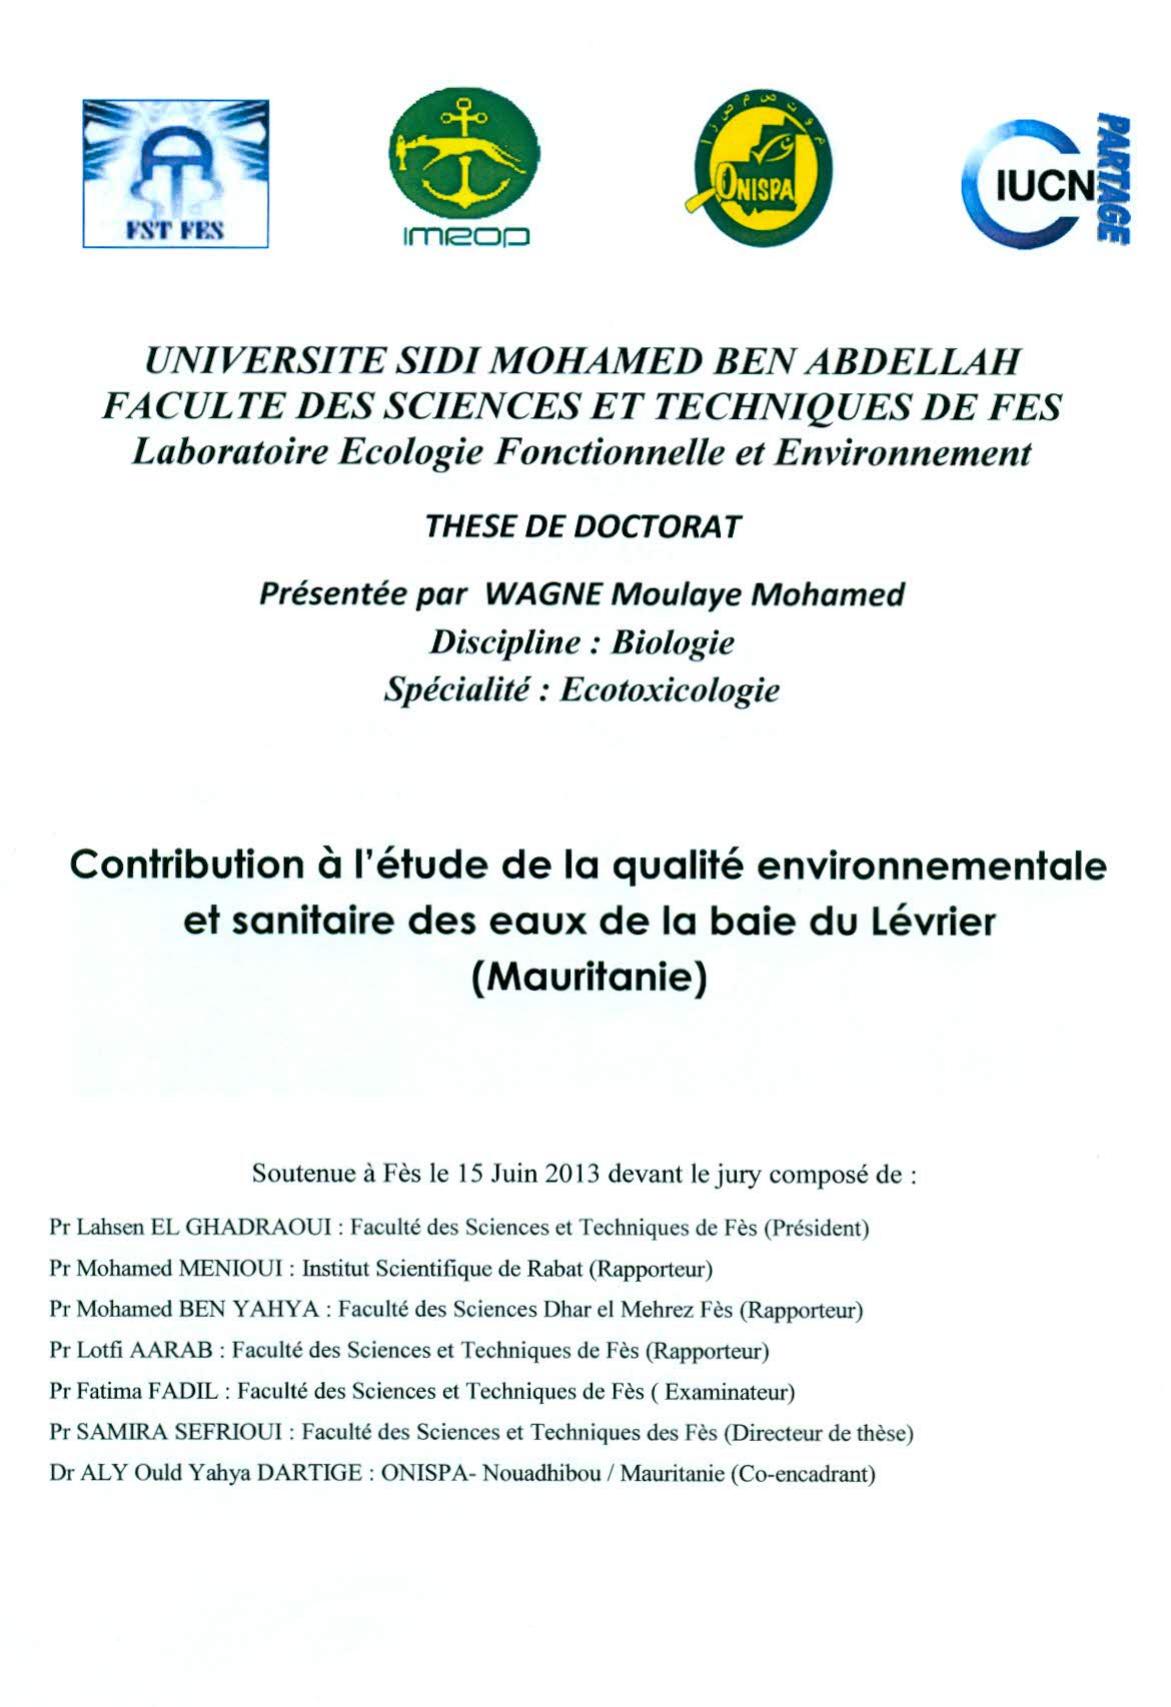 Contribution à l'étude de la qualité environnementale et sanitaire des eaux de la baie du Lévier (Mauritanie)